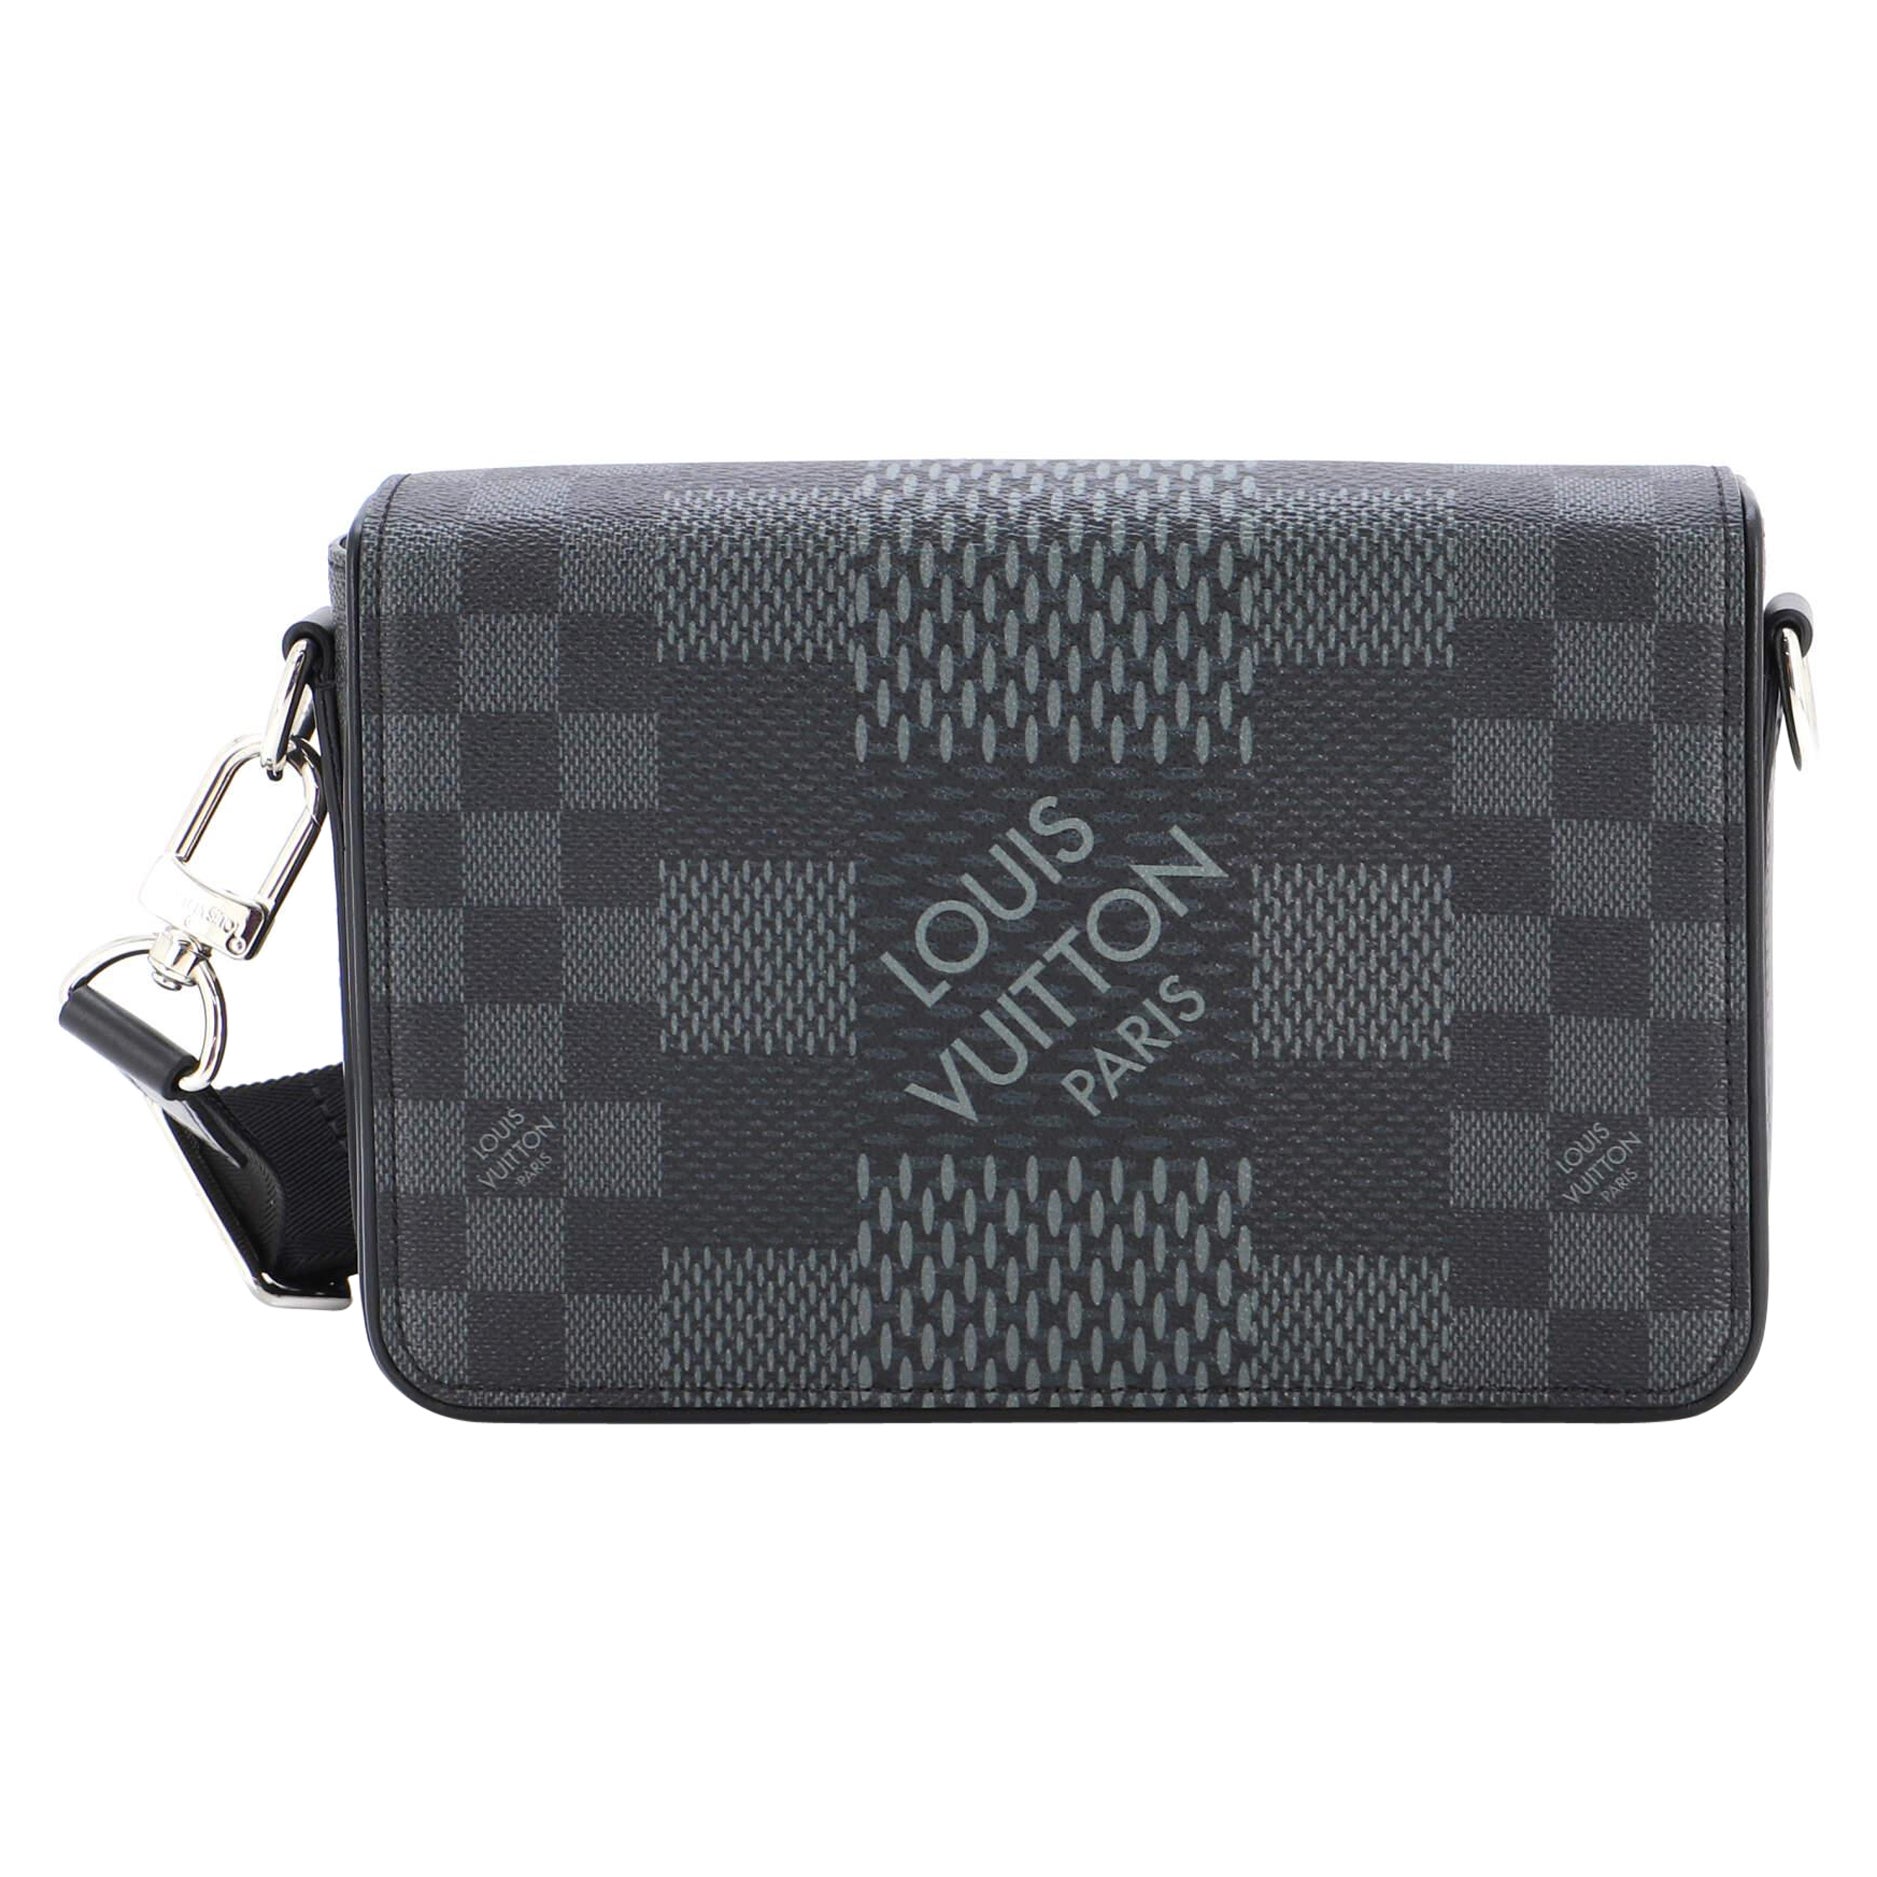 Louis Vuitton Studio Messenger Bag Limited Edition Damier Graphite 3D For Sale